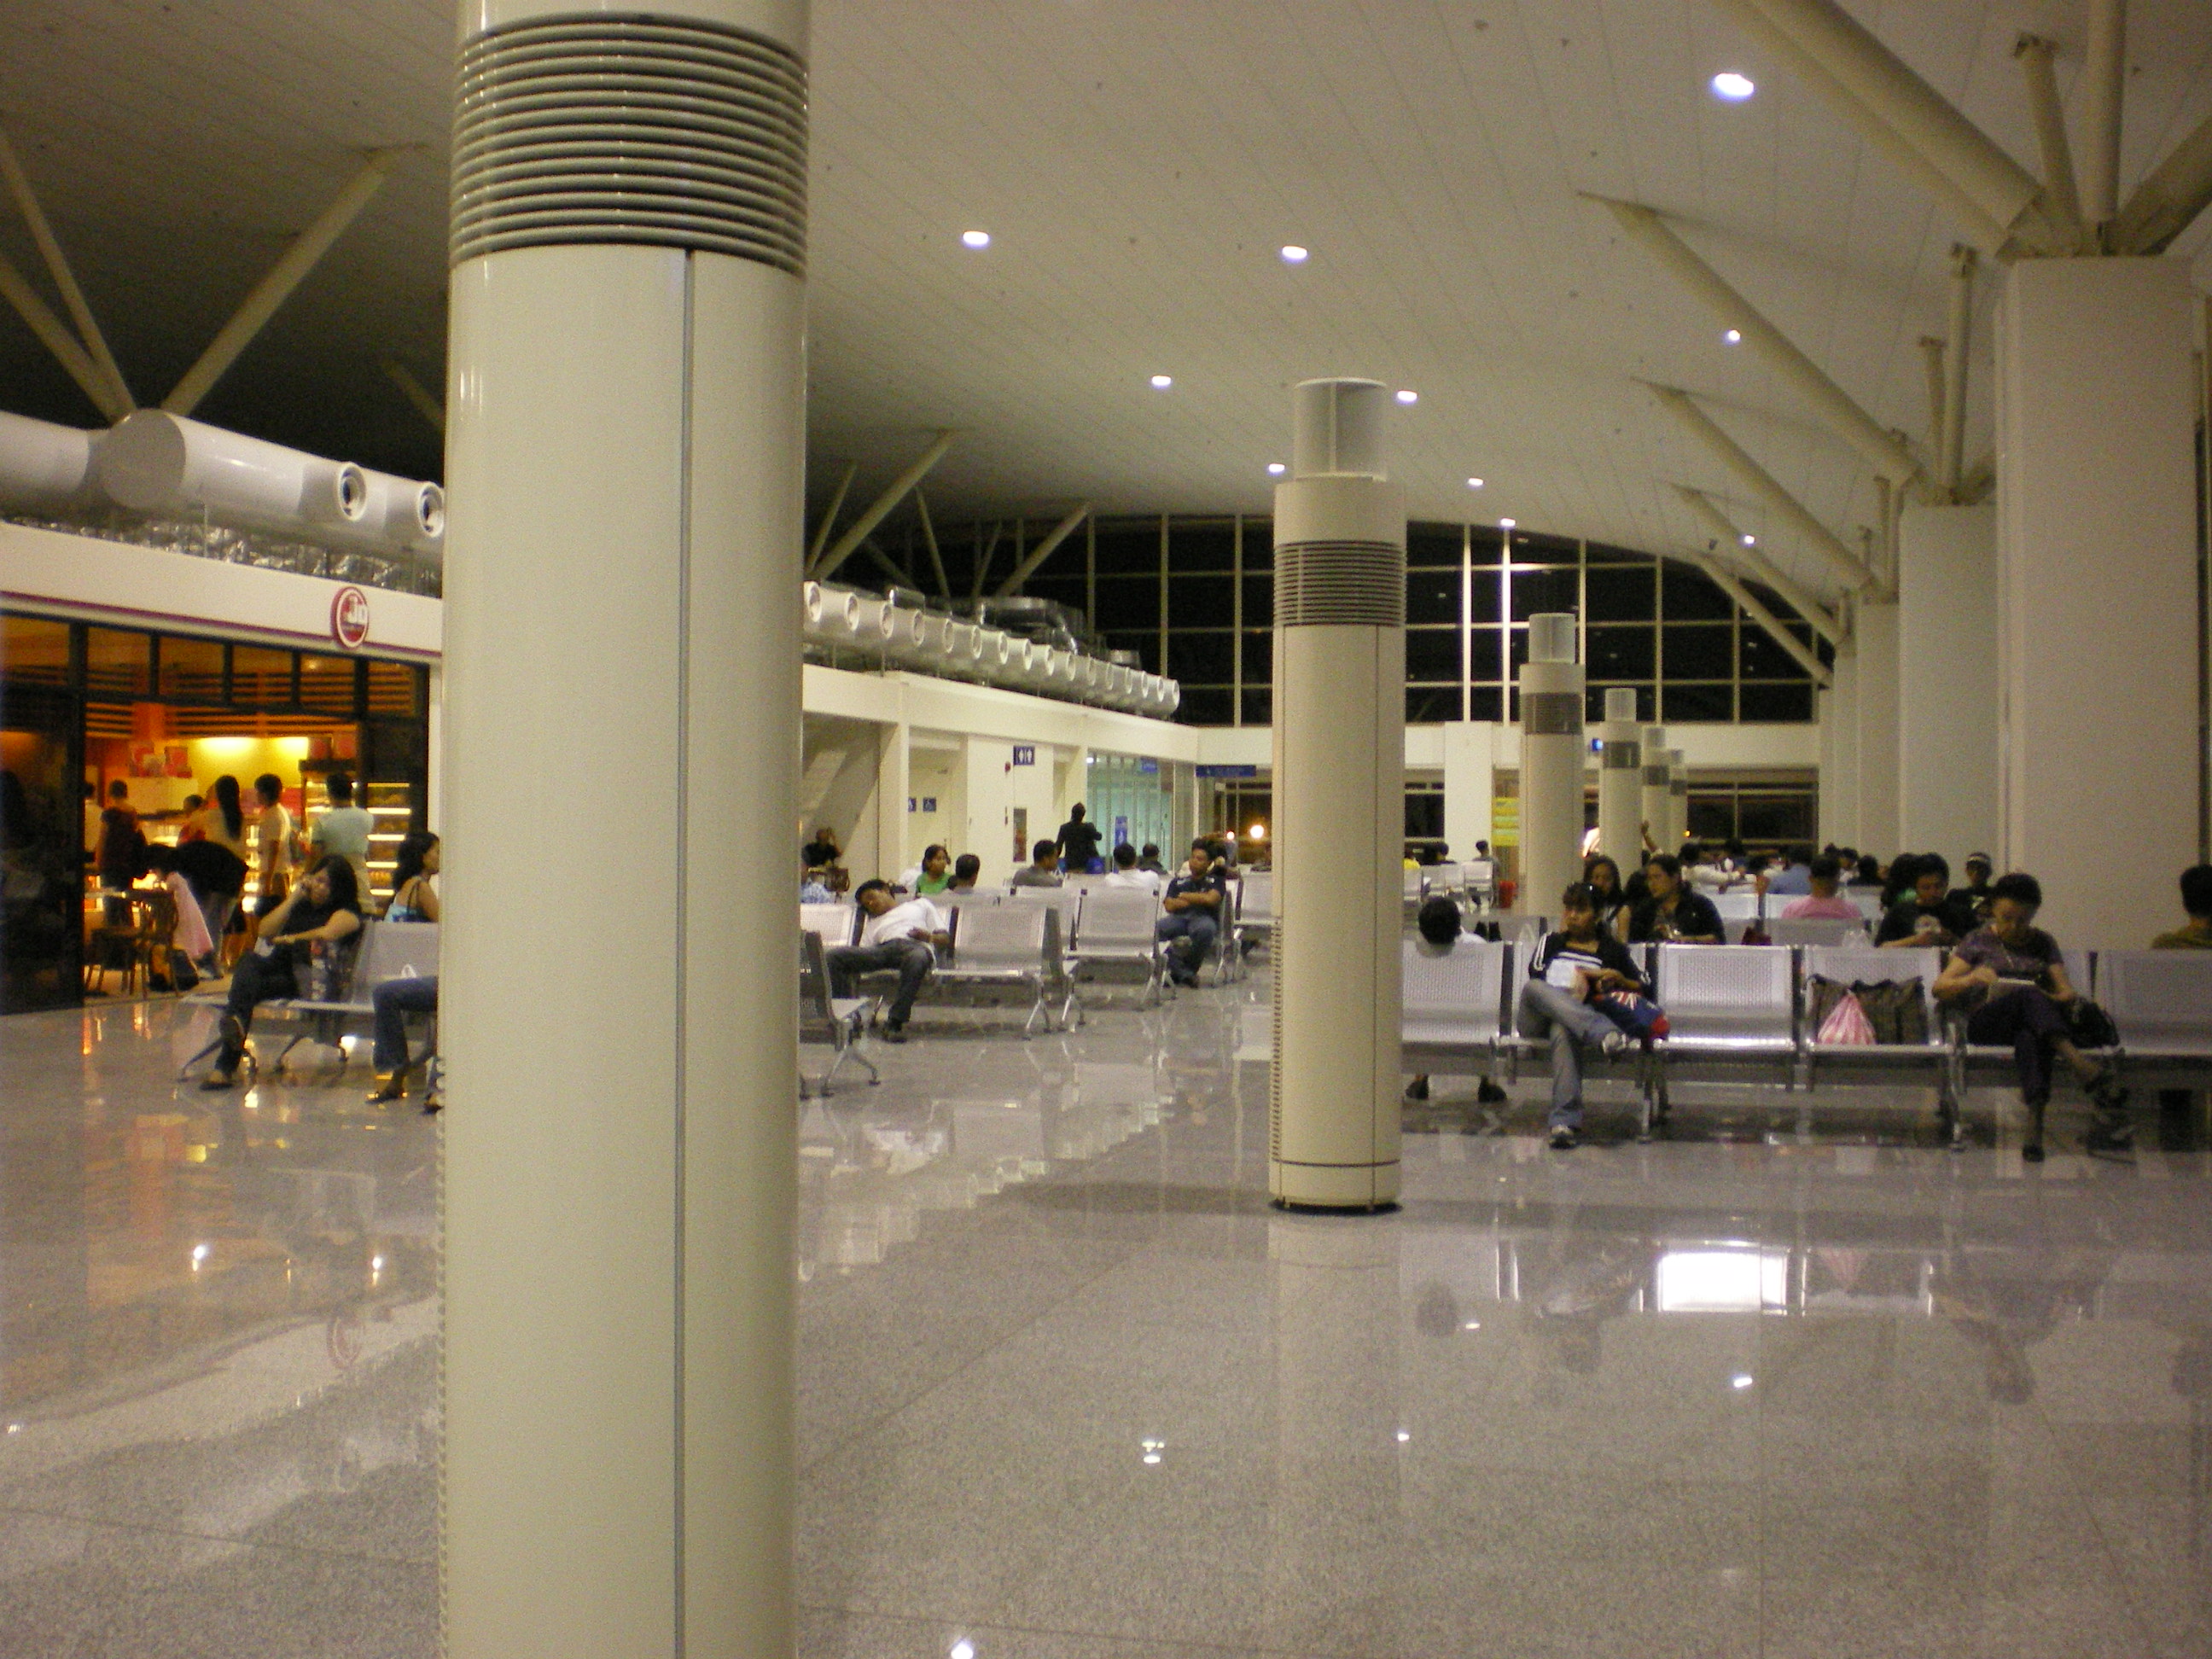 File:Iloilo Airport Interior.jpg - Wikimedia Commons